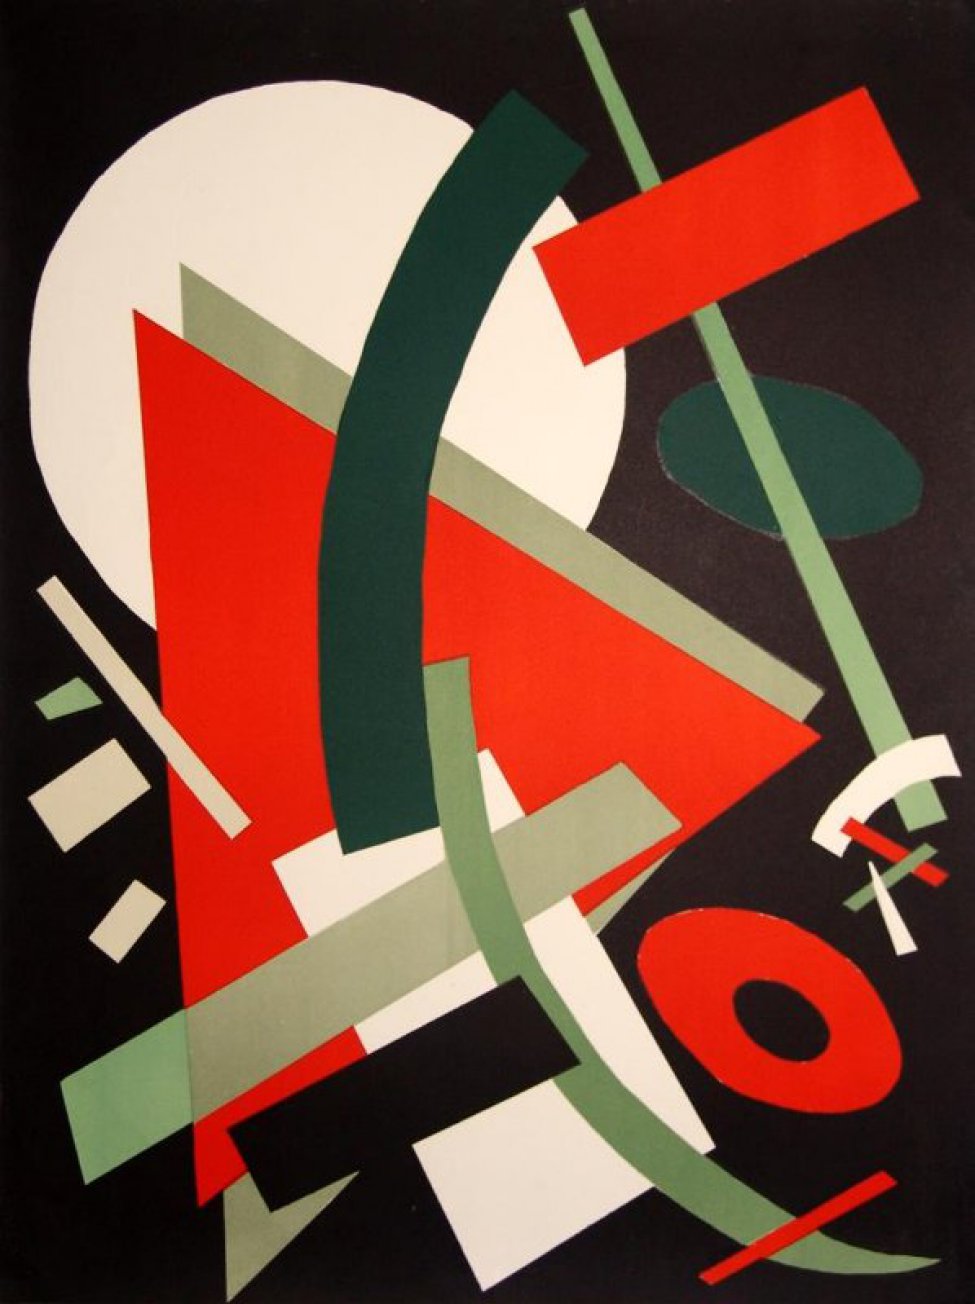 На черном фоне изображена композиция из геометрических фигур белого, красного и зеленого цветов. В центре- два треугольника, вверху- круг.